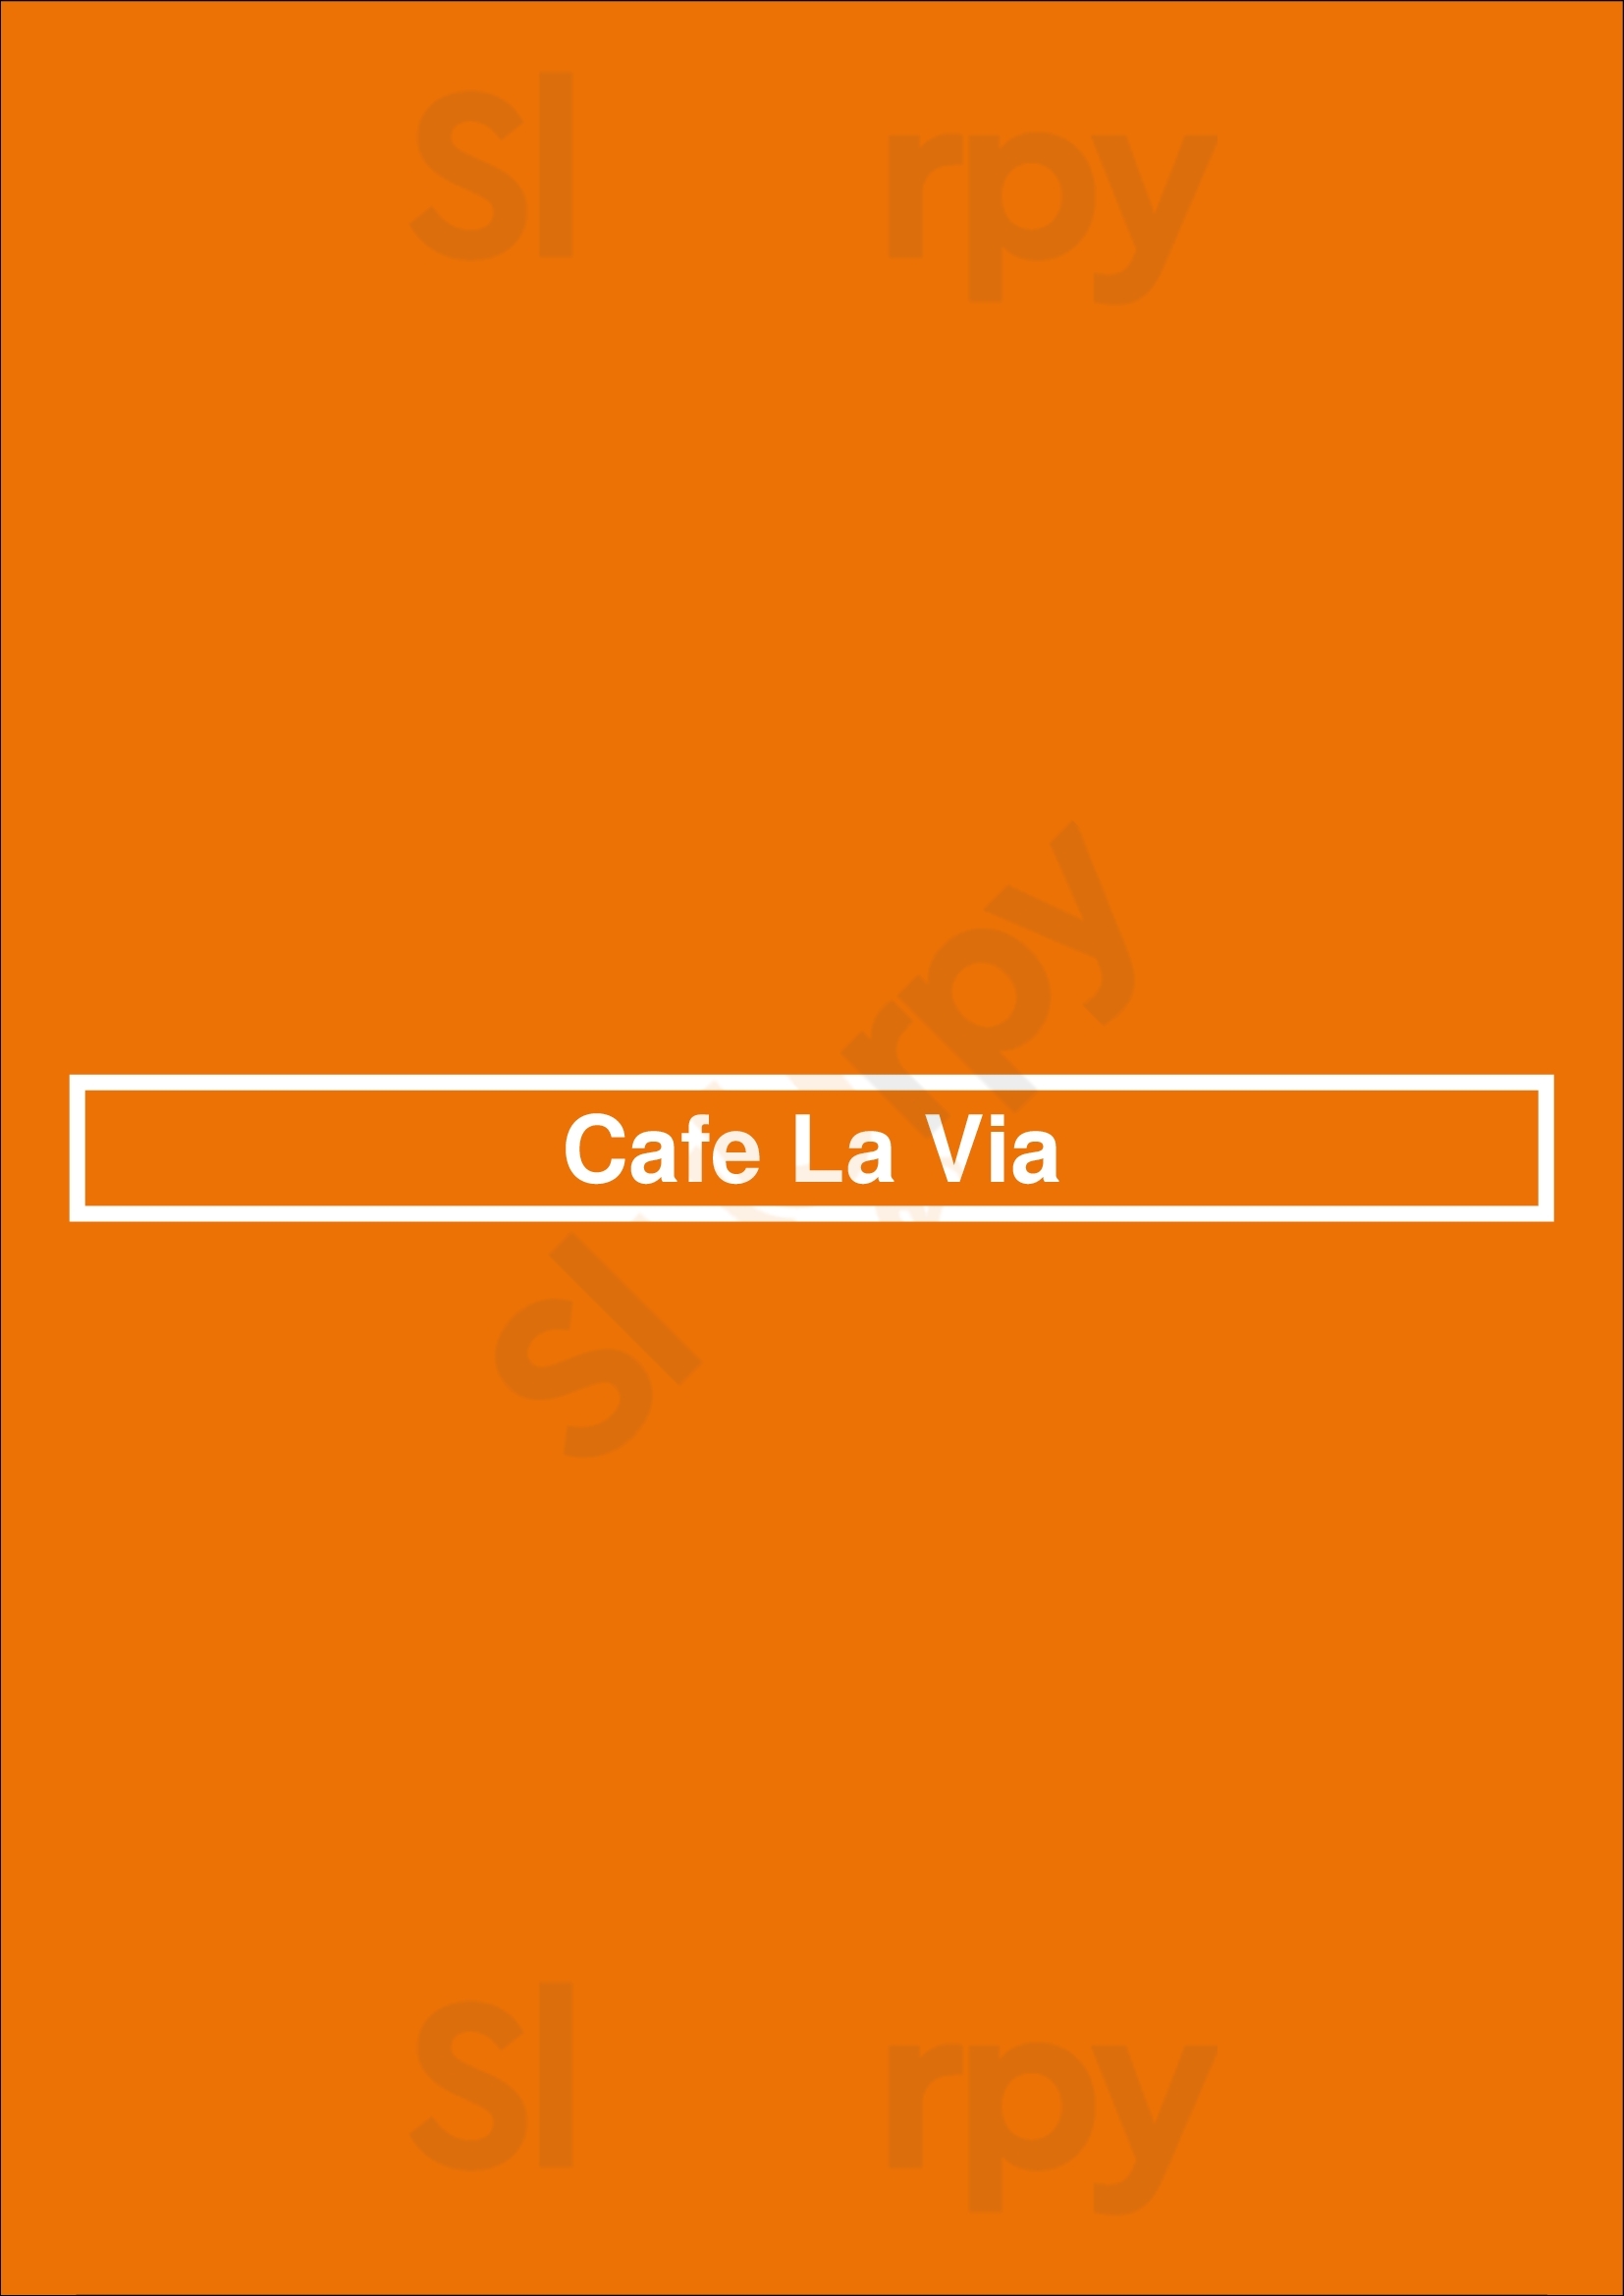 Cafe La Via Malvern Menu - 1